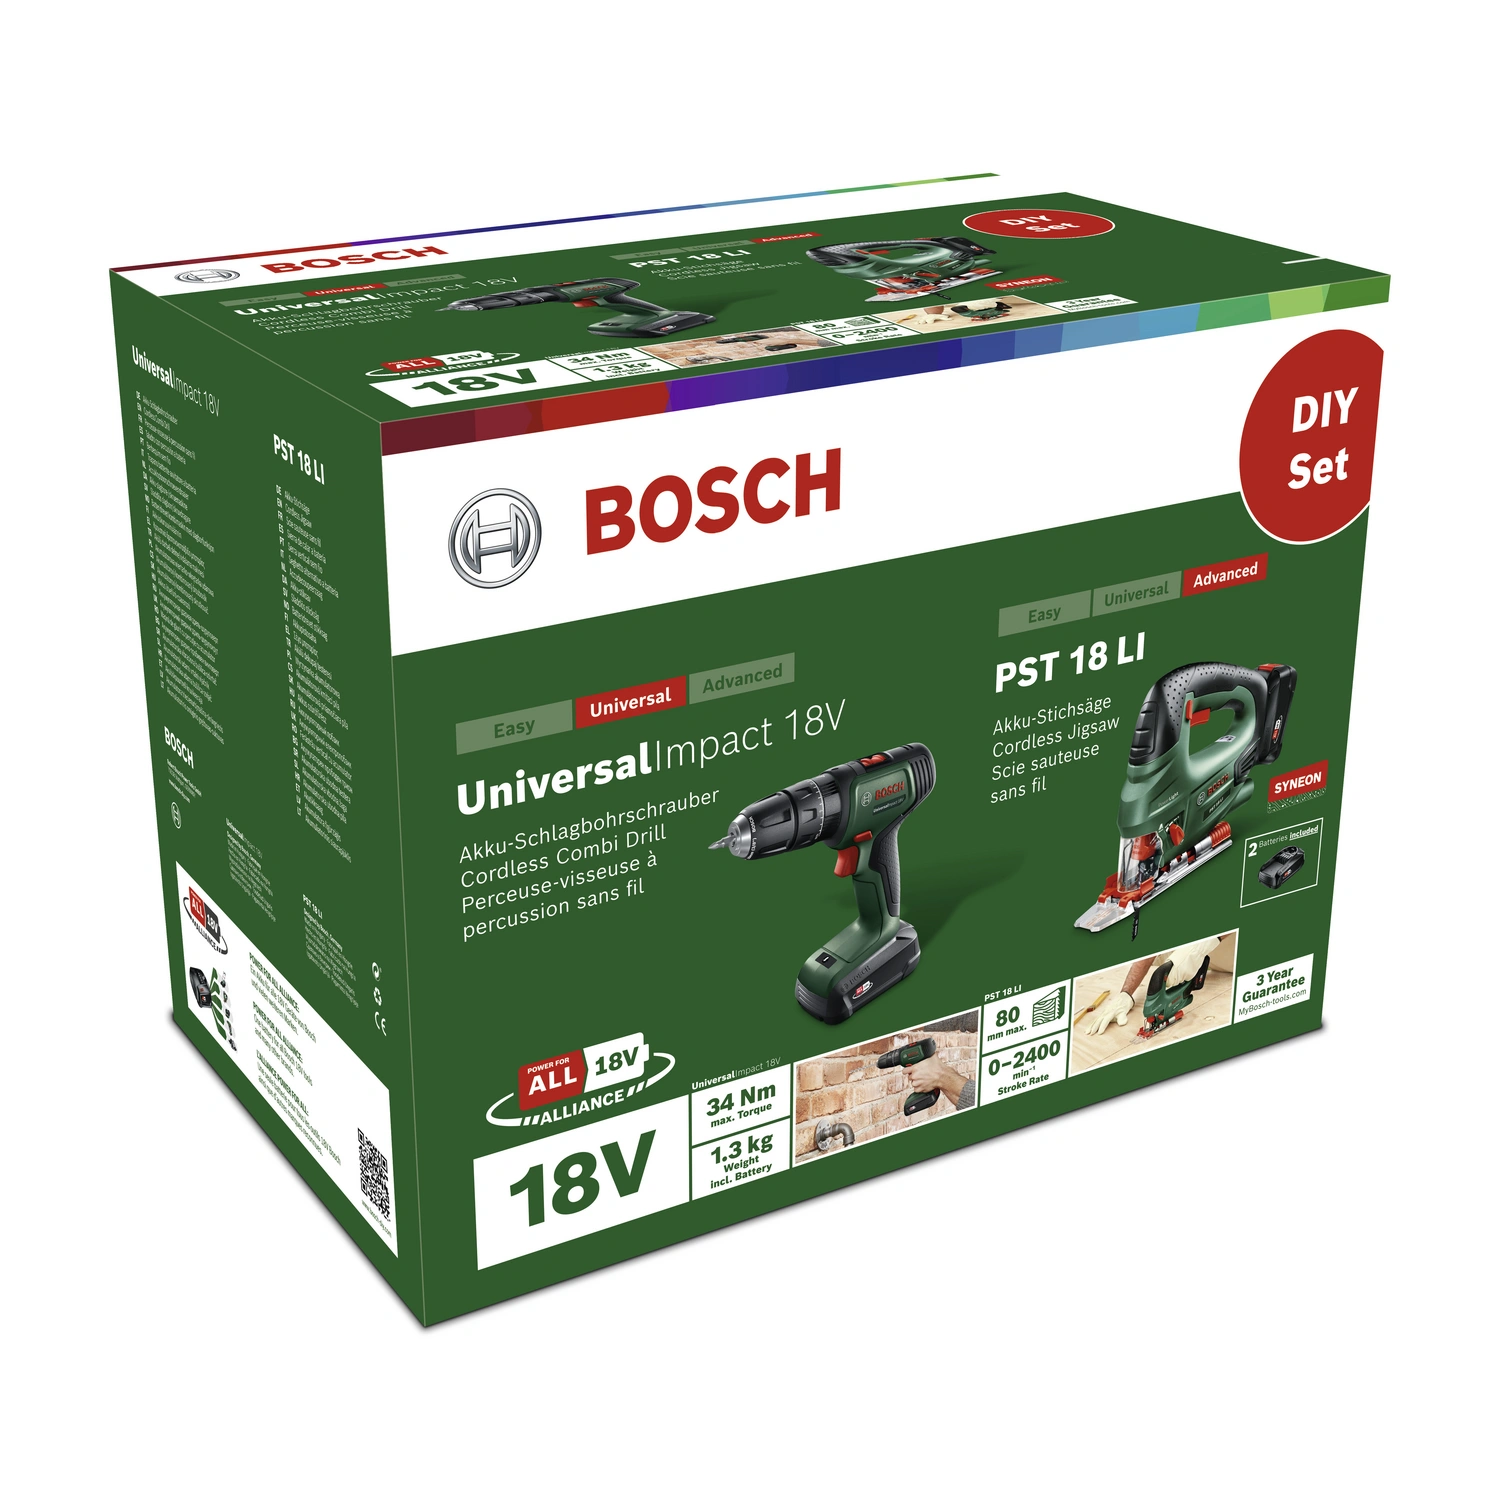 Bosch 18V 6Ah Akku - Produktfälschung? - Community